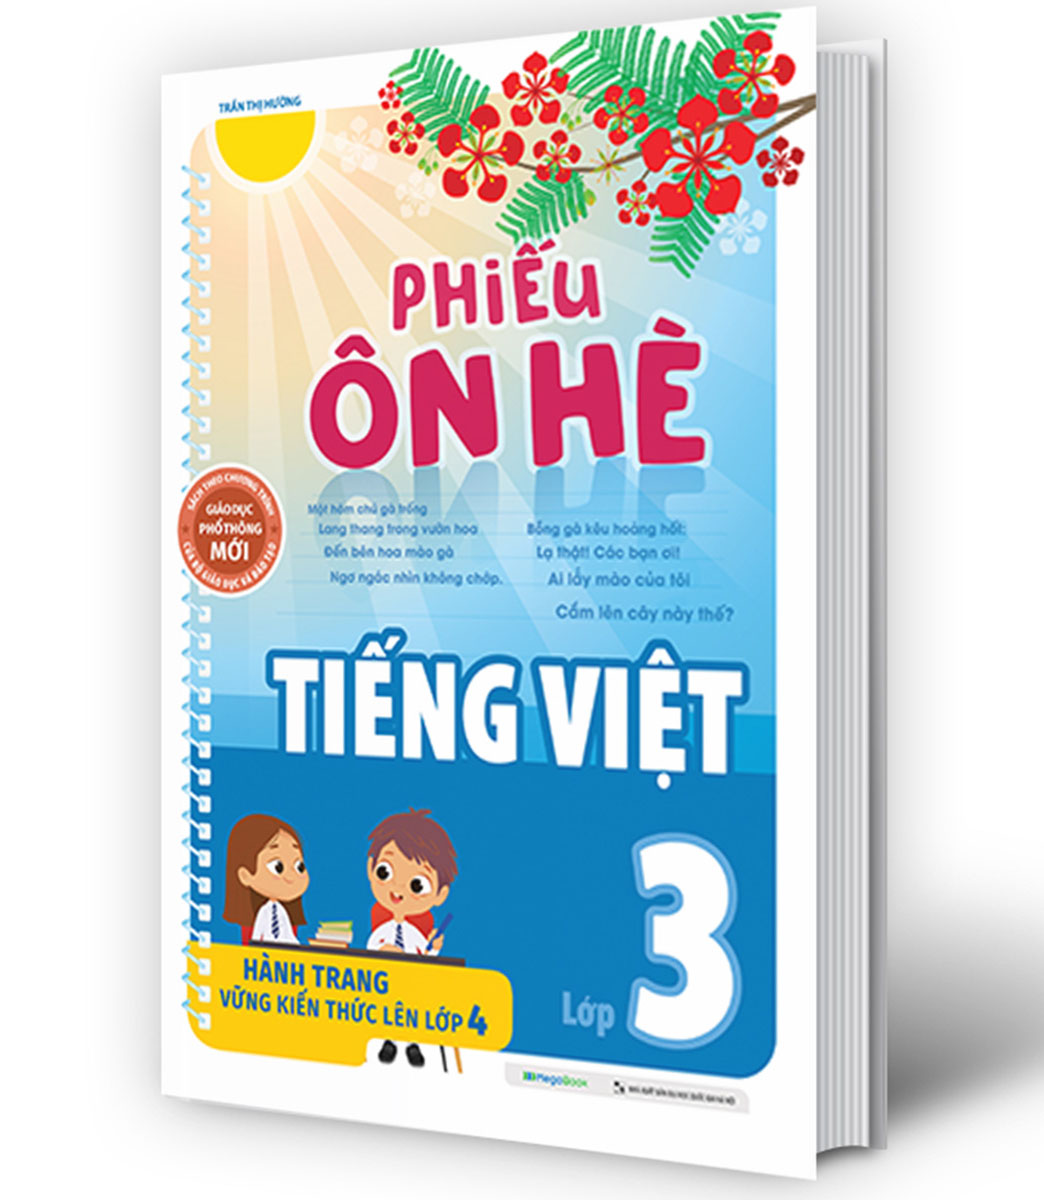 Combo Phiếu Ôn Hè Toán + Tiếng Việt Lớp 3 - Hành Trang Vững Kiến Thức Lên Lớp 4 (Bộ 2 Cuốn) (MEGA)